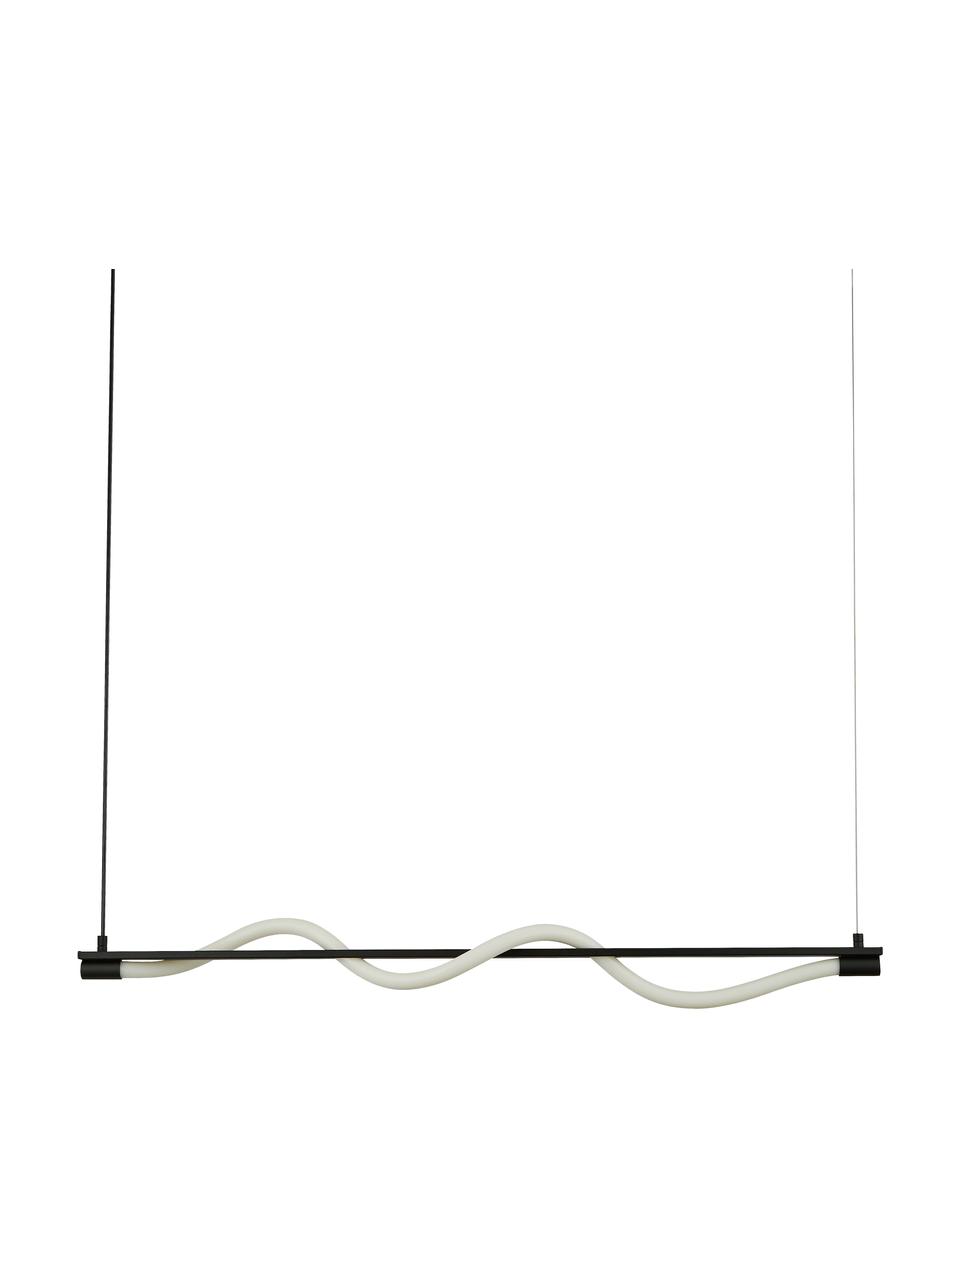 Grote LED hanglamp Serpent in zwart, Lampenkap: silicone, Baldakijn: gecoat metaal, Zwart, wit, B 100 x H 122 cm